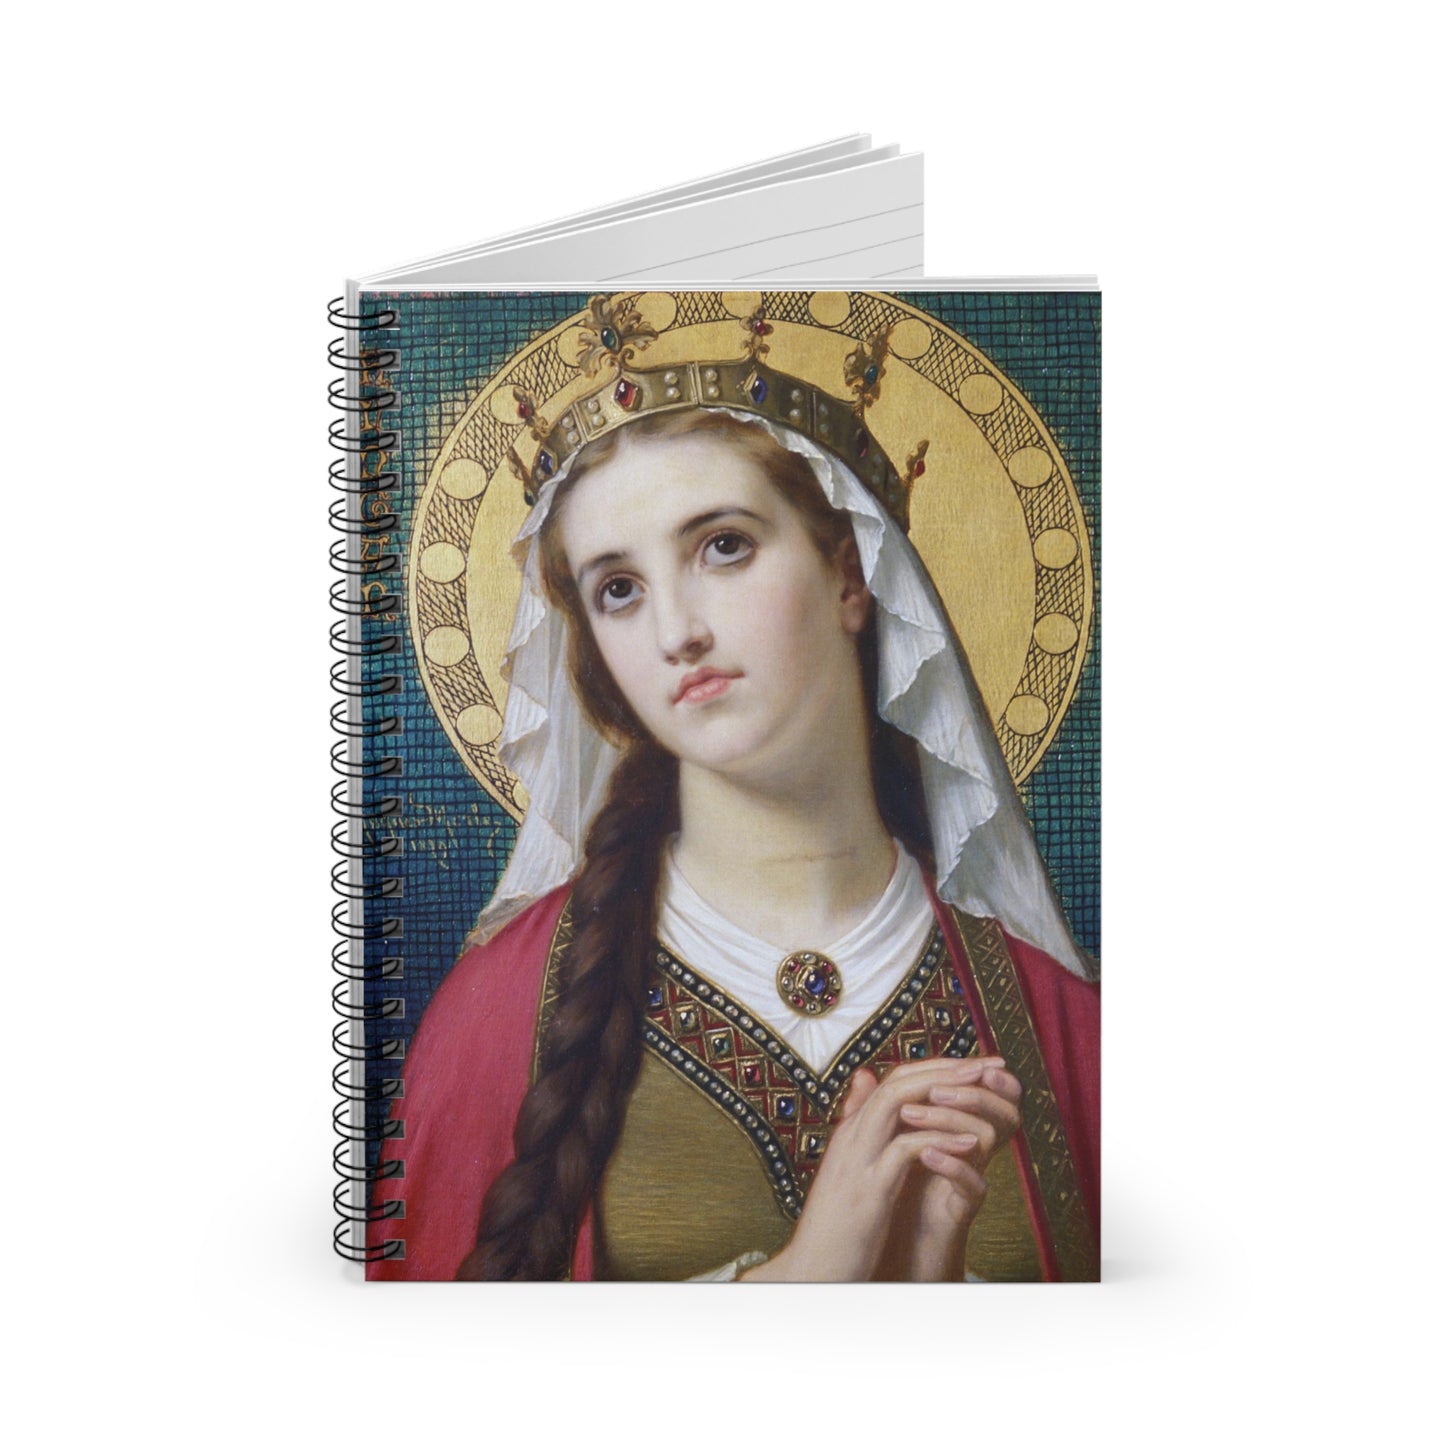 St Elizabeth of Hungary Catholic Notebook, November Saint confirmation Gift, Religious Art Christmas Gift, Saint Elisabeth